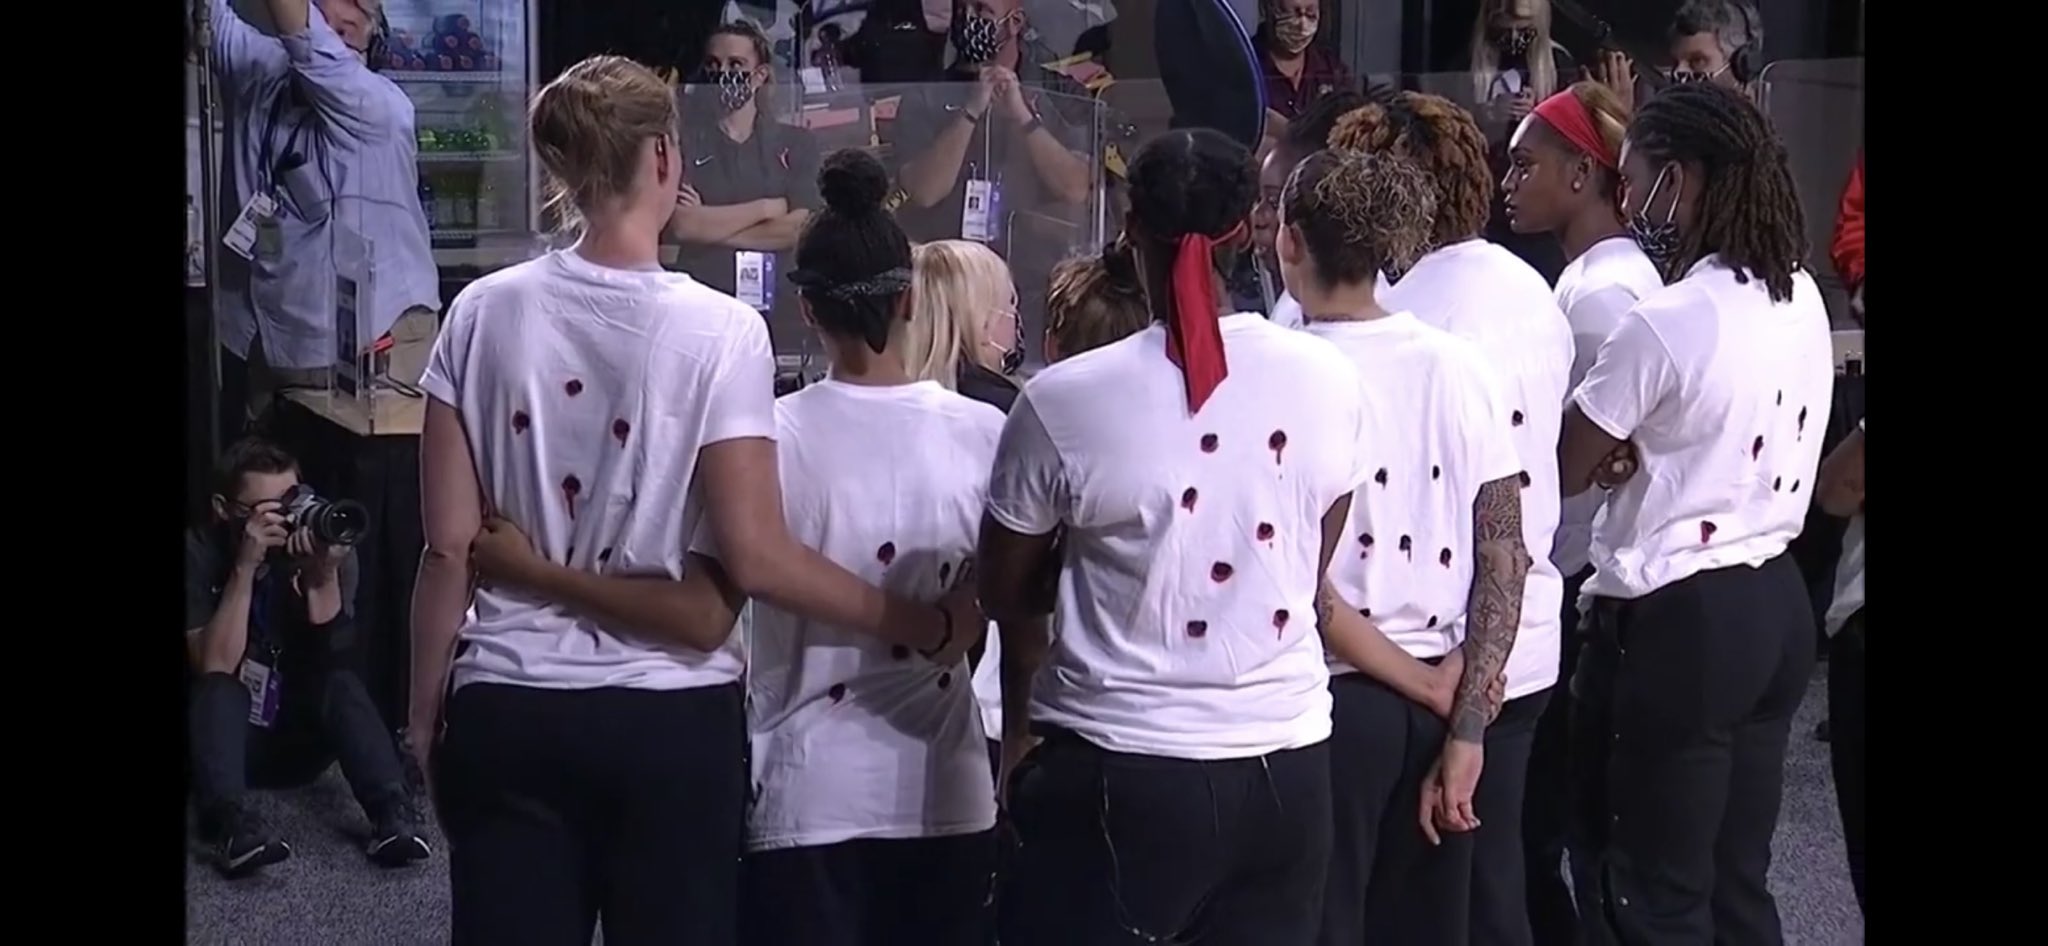 La WNBA se suma al boicot pels atacs racistes als Estats Units